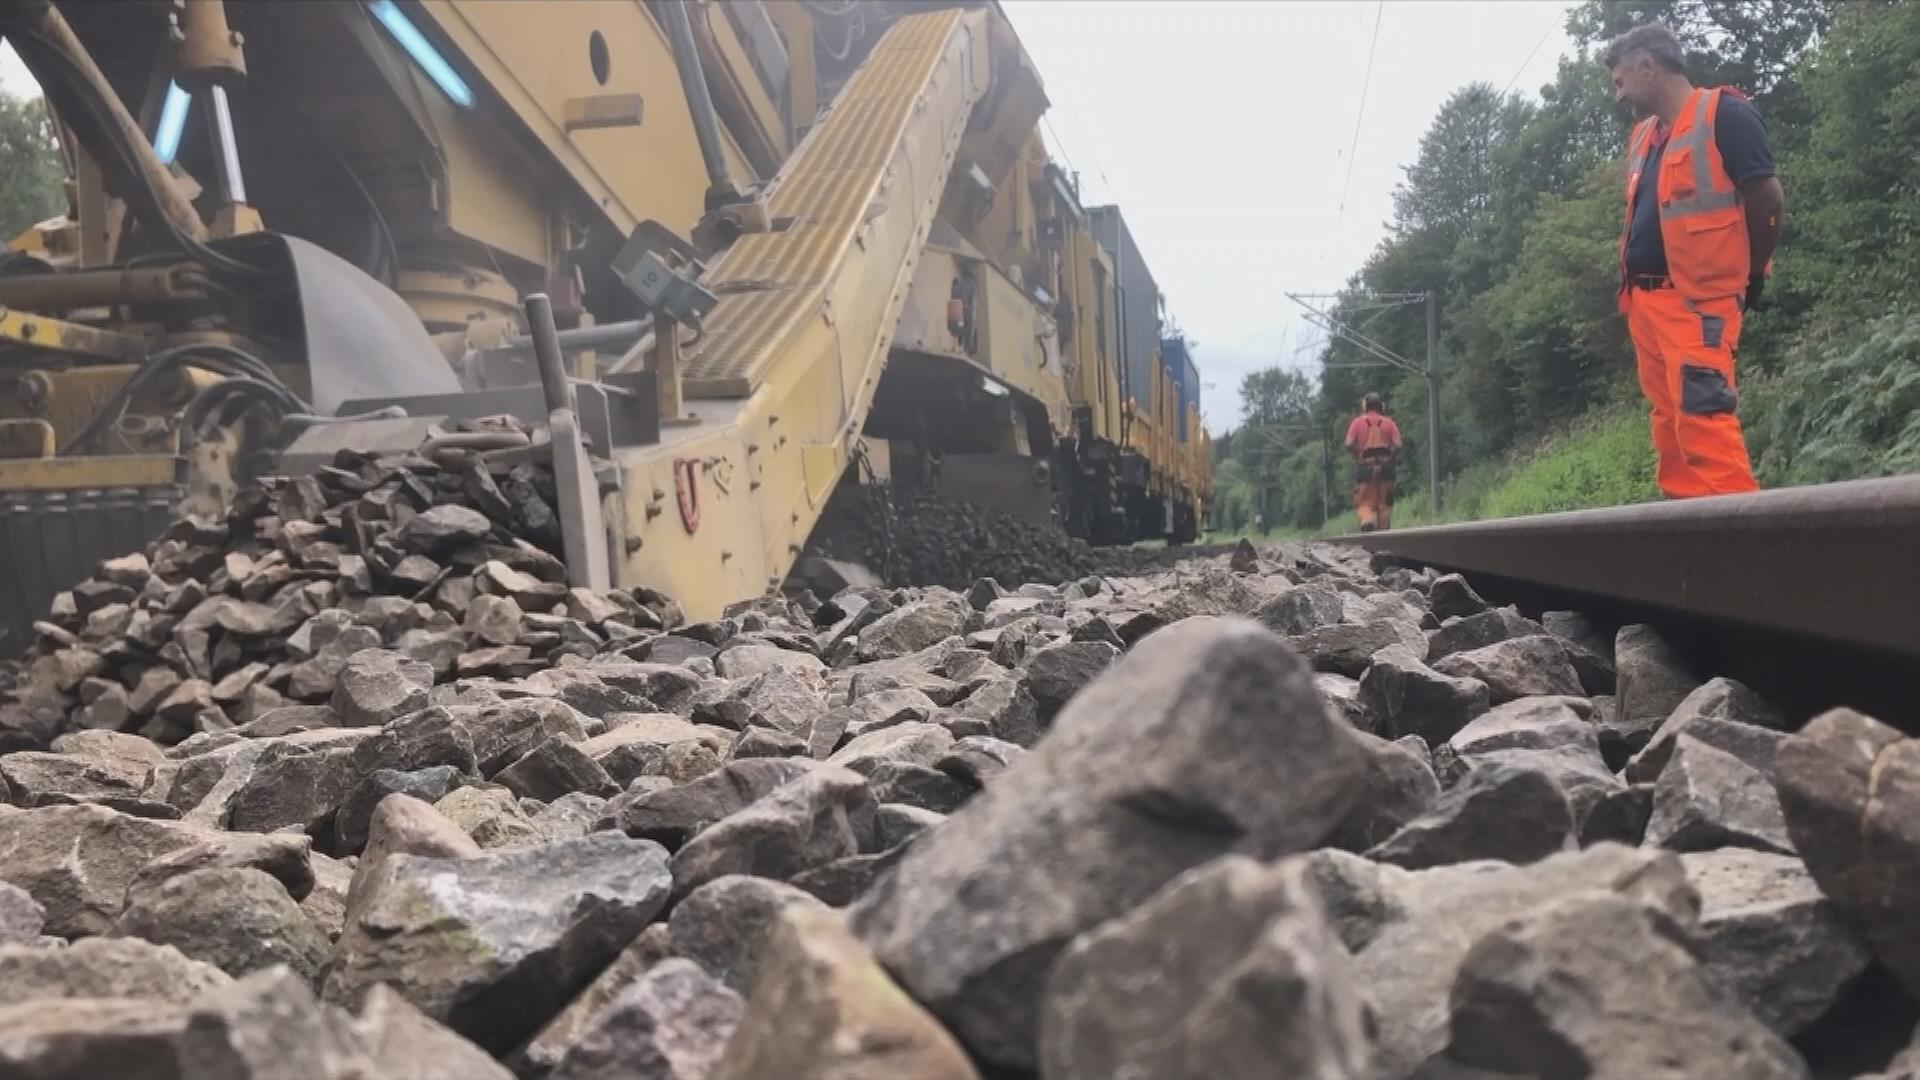 Gleisarbeiten an einer Bahnstrecke.